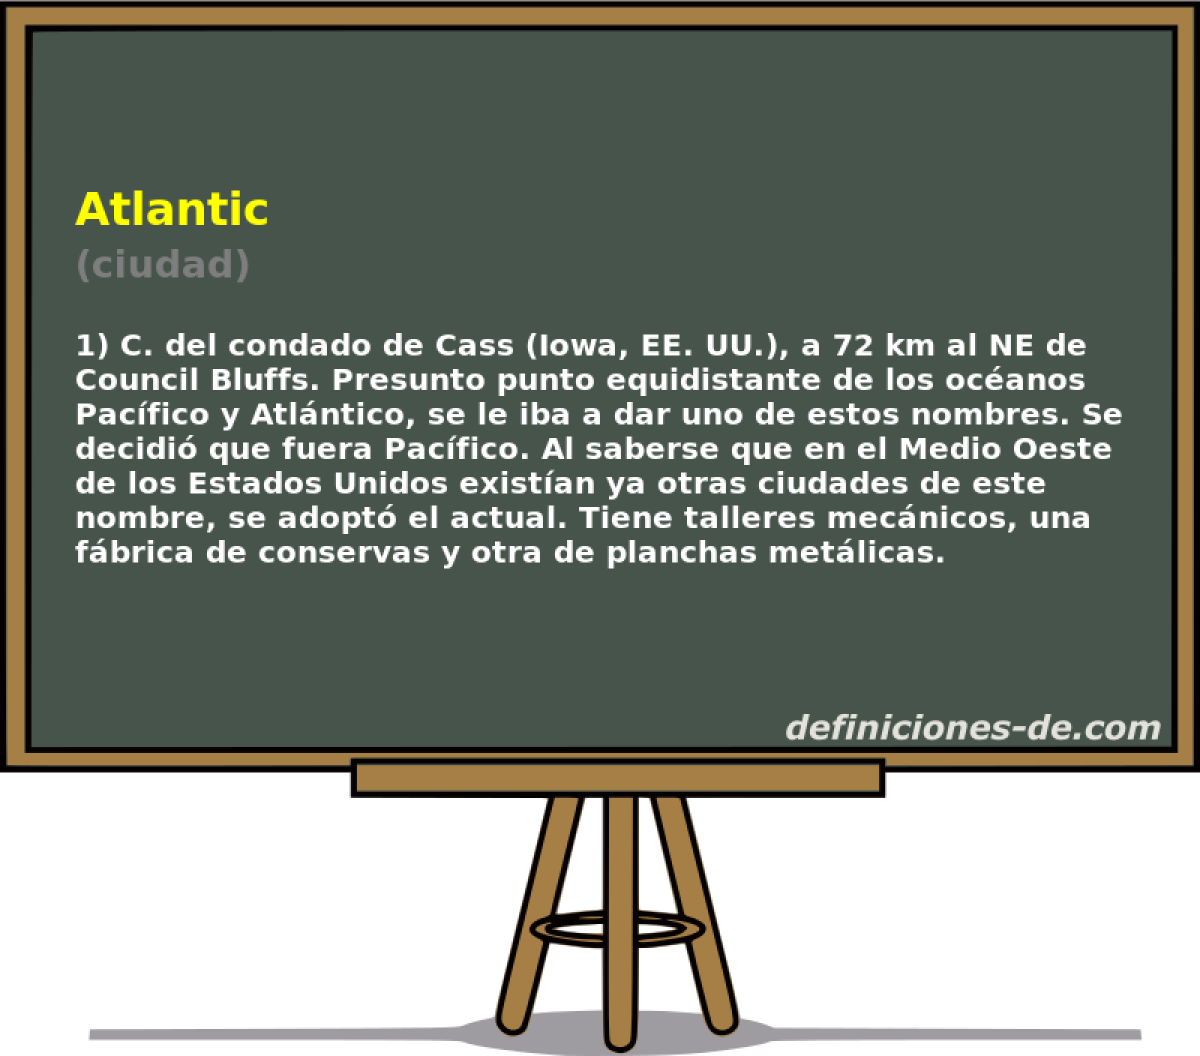 Atlantic (ciudad)